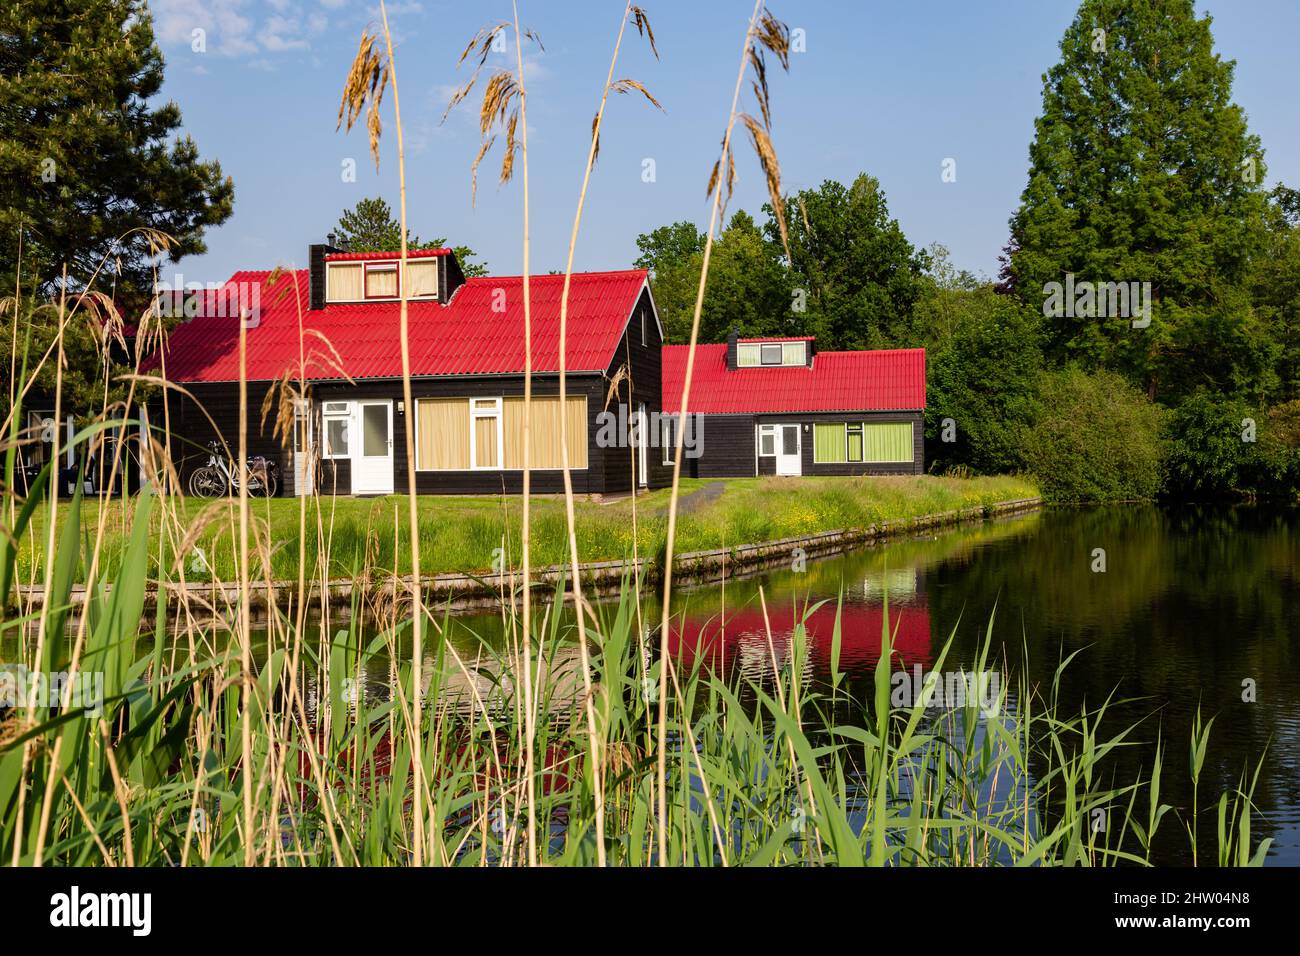 Petites maisons de vacances confortables avec des toits rouges reflétés dans l'eau Banque D'Images